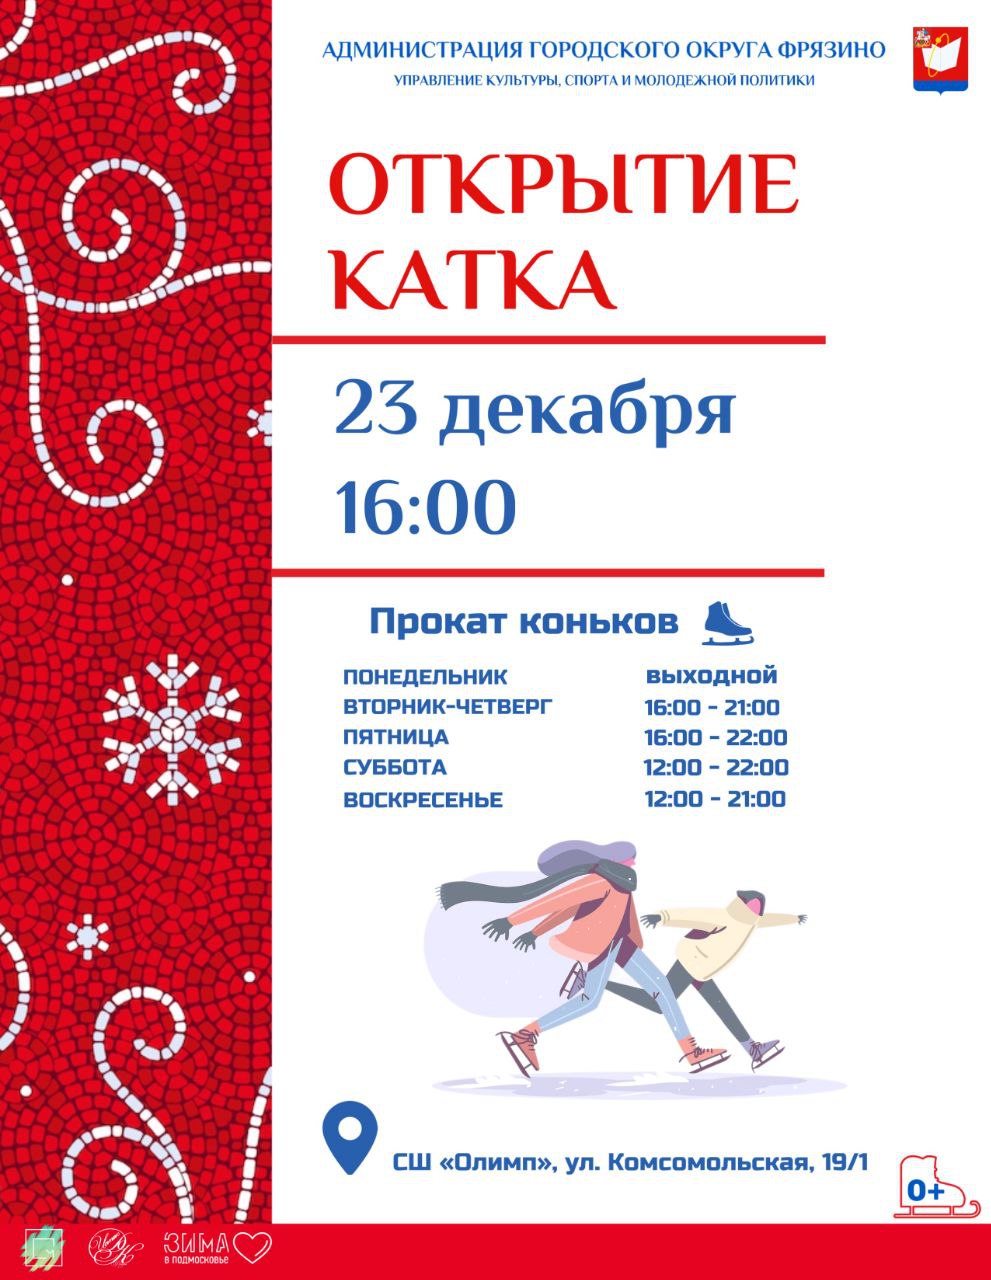 23 декабря в 16.00 состоится открытие катка на стадионе спортивной школы "Олимп"!